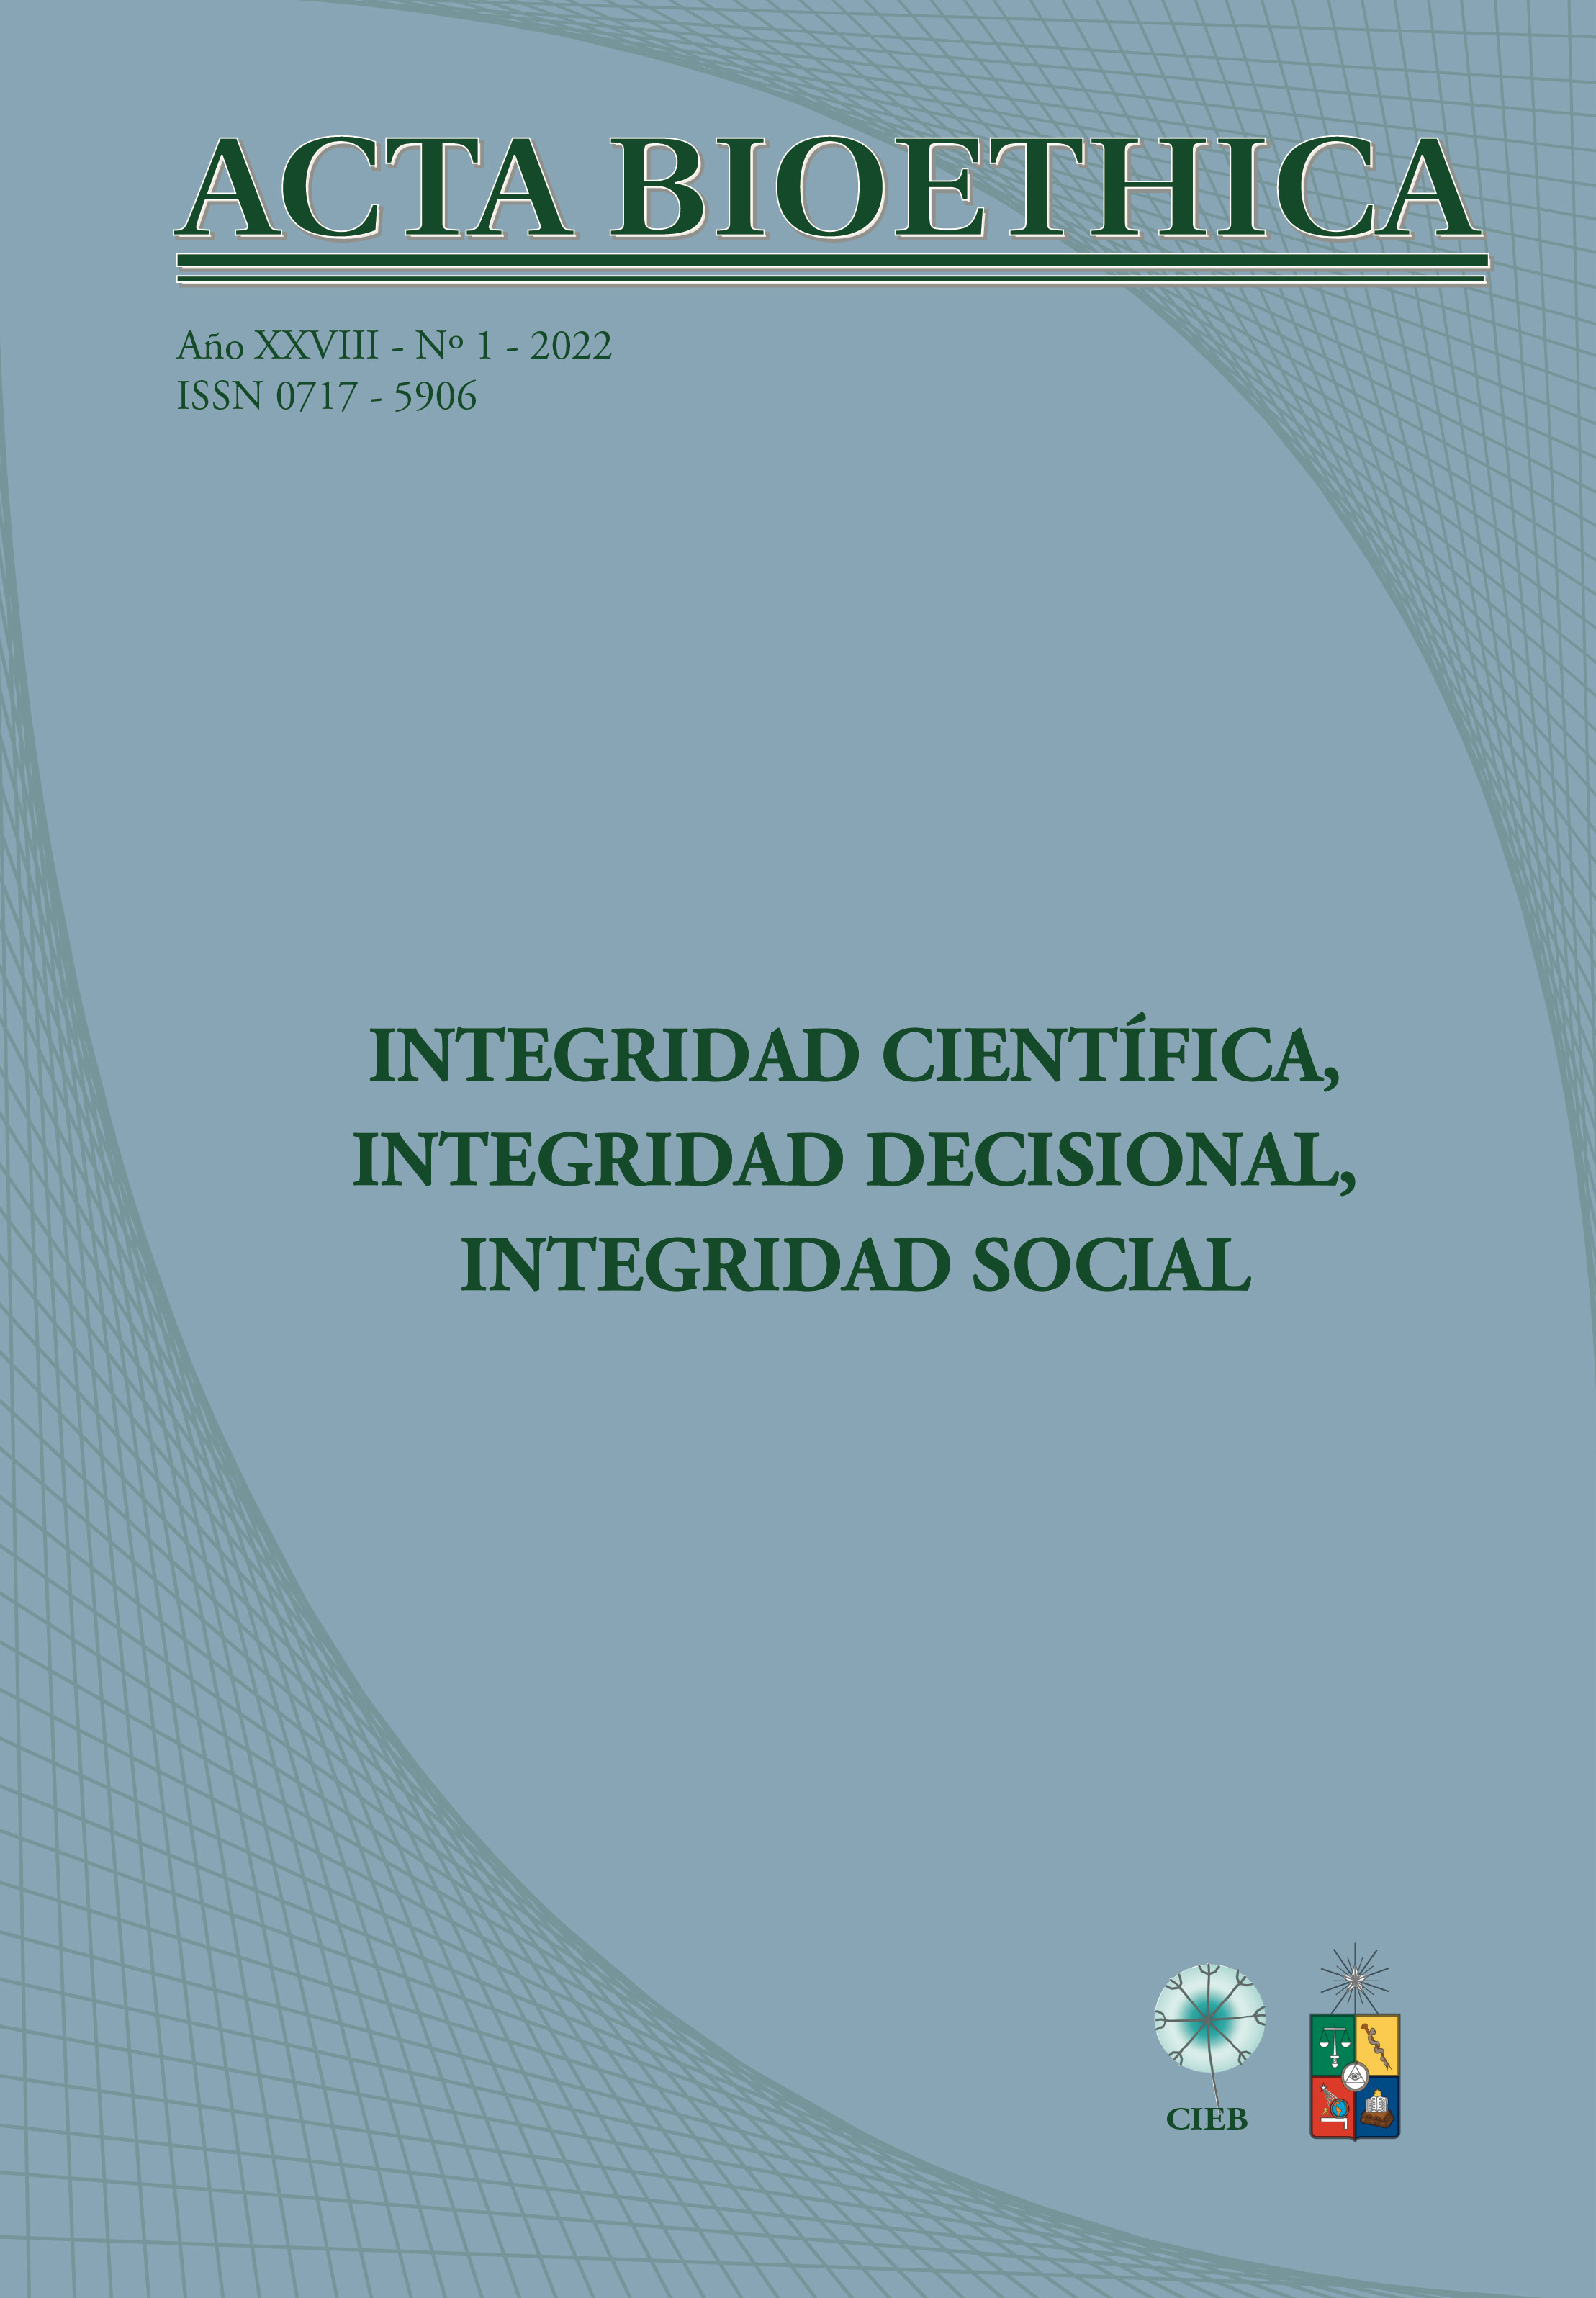 											View Vol. 28 No. 1 (2022): Integridad científica, integridad decisional, integridad social
										